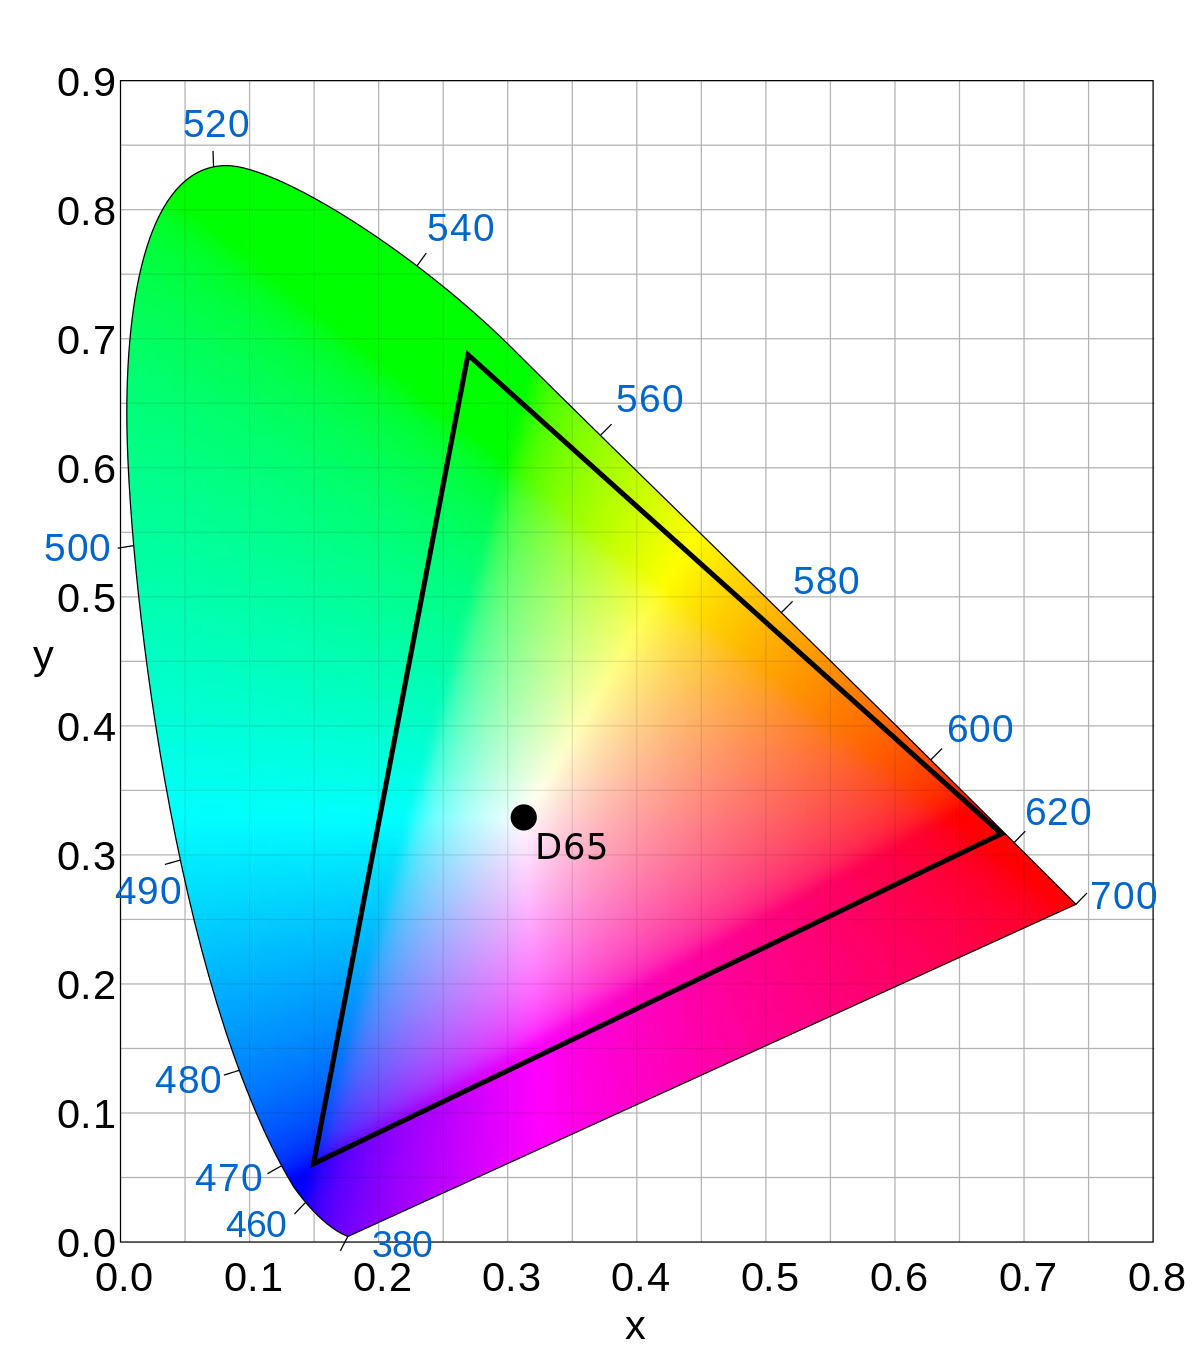 Gamut del perfil de color P3 en comparación con sRGB